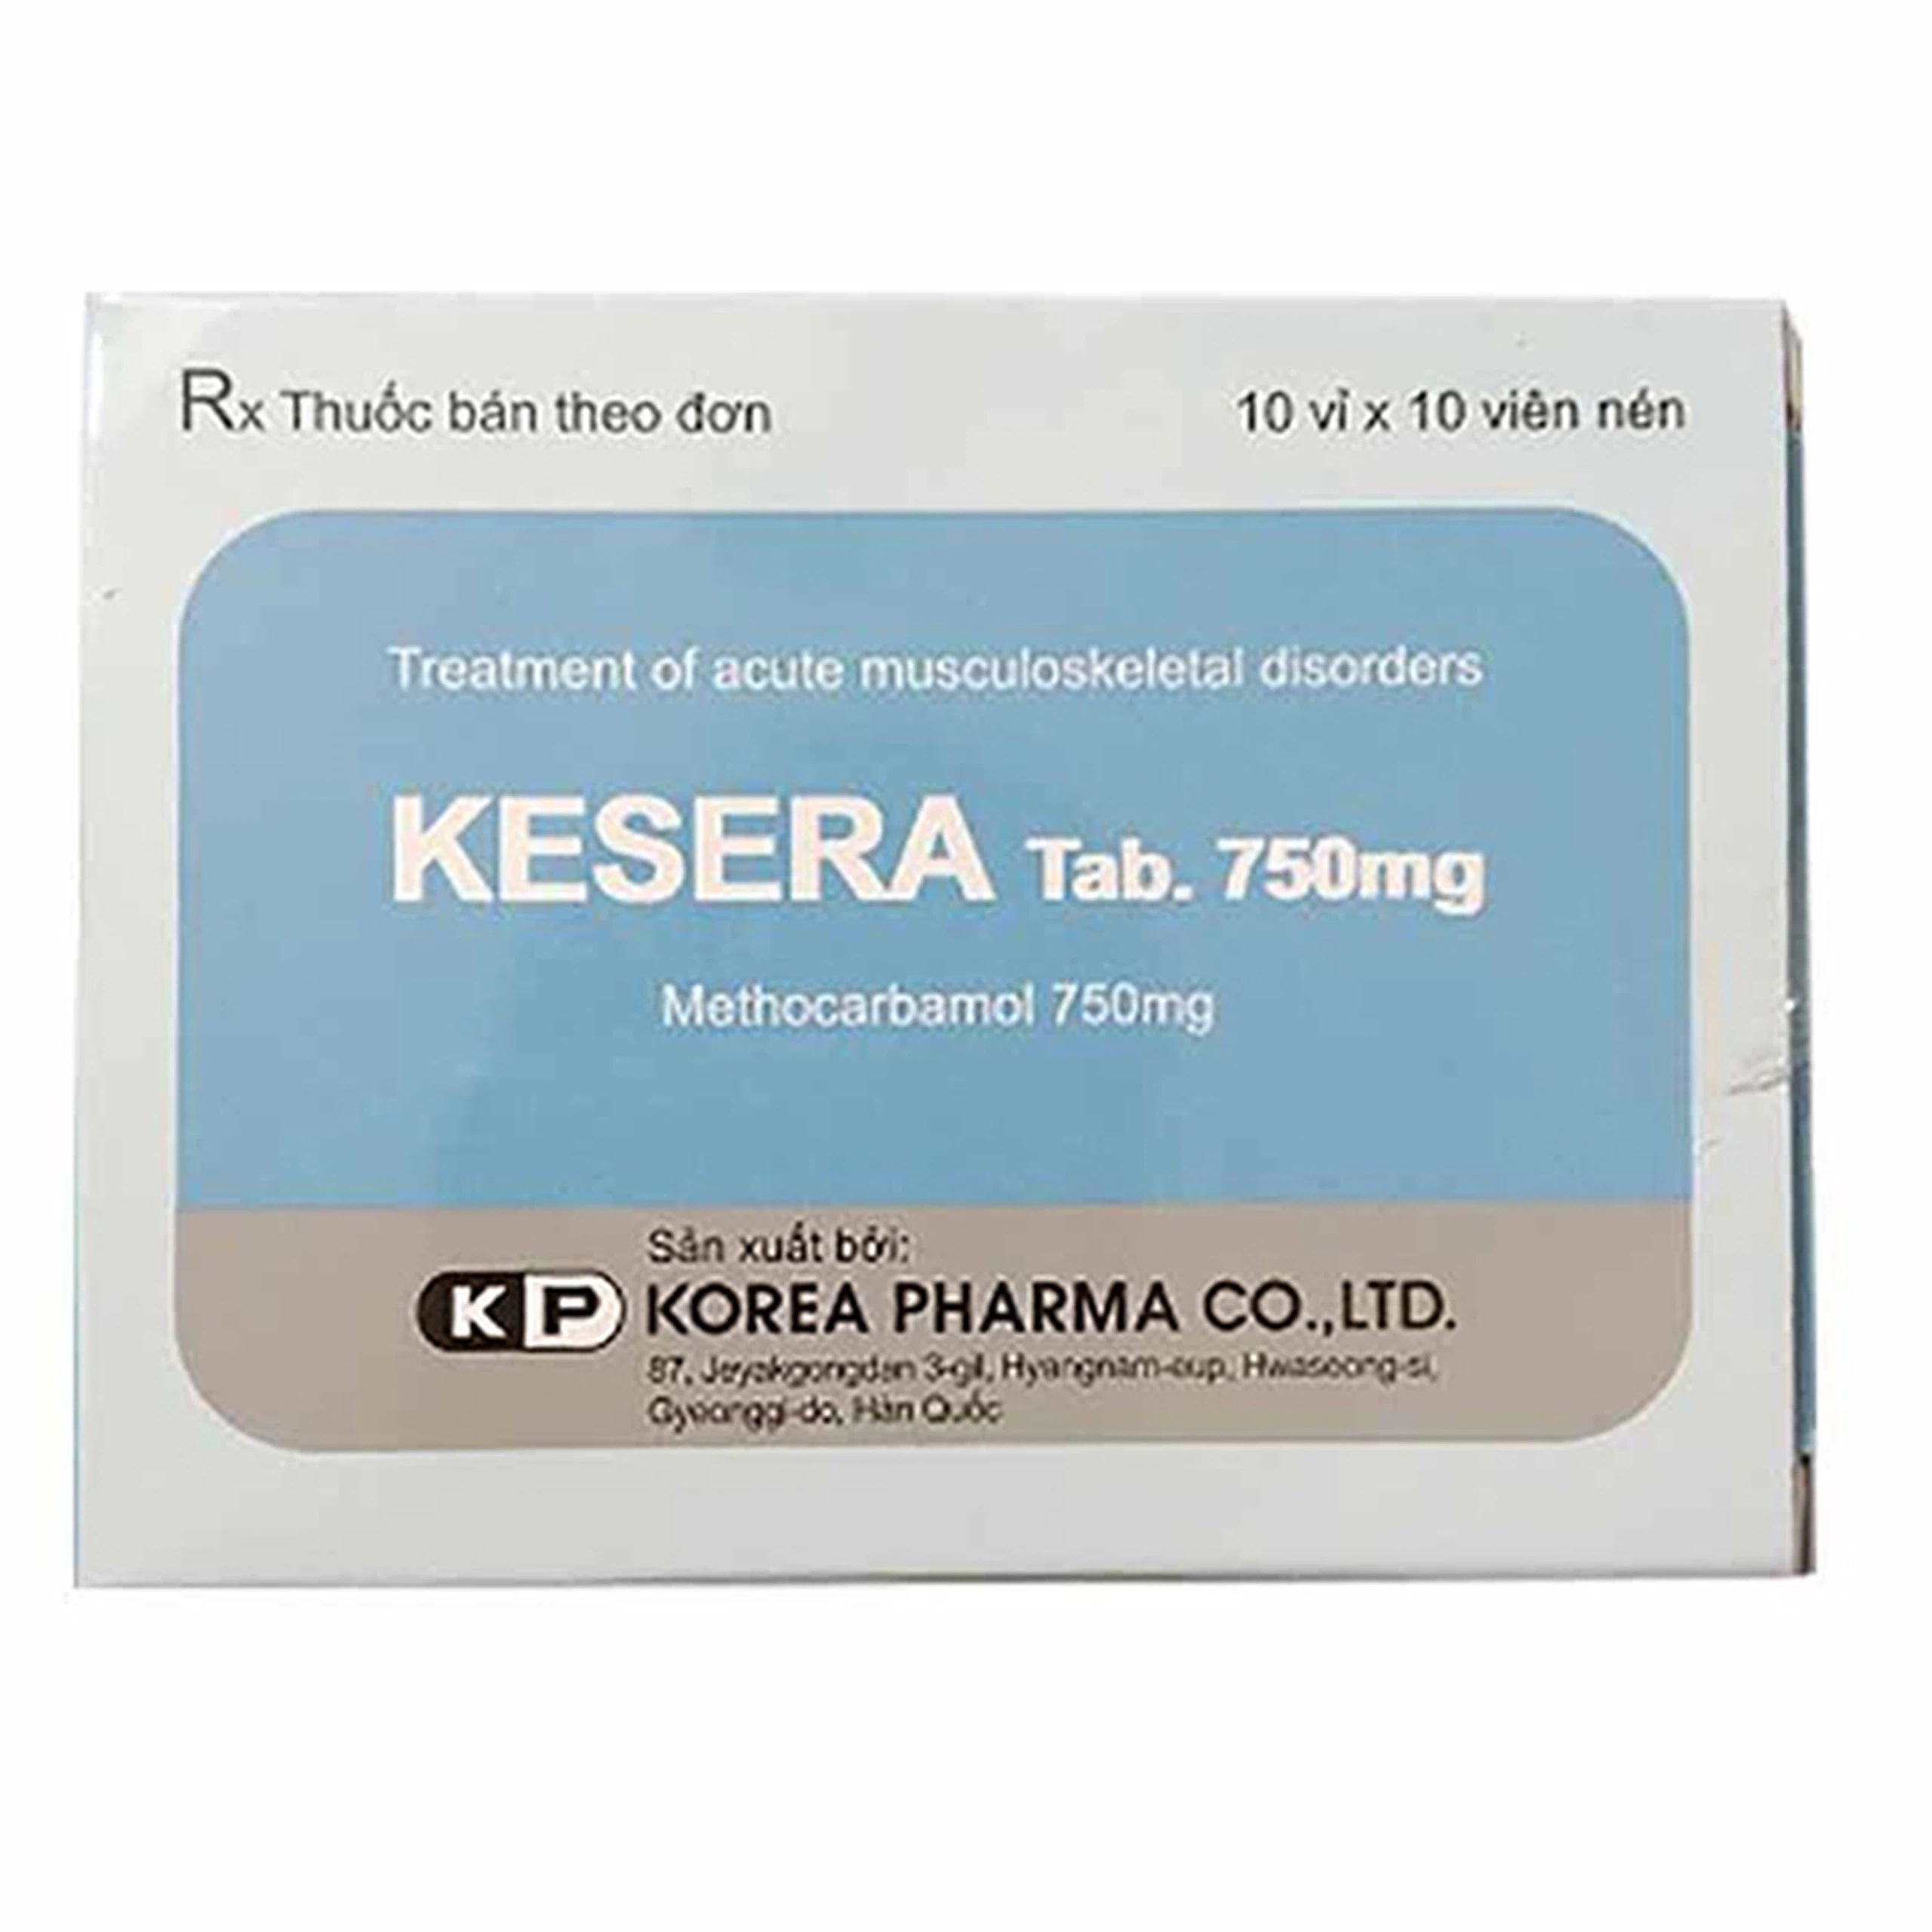 Viên nén Kesera 750mg Korea Pharma giảm đau do bong gân, căng cơ, chấn thương (10 vỉ x 10 viên)